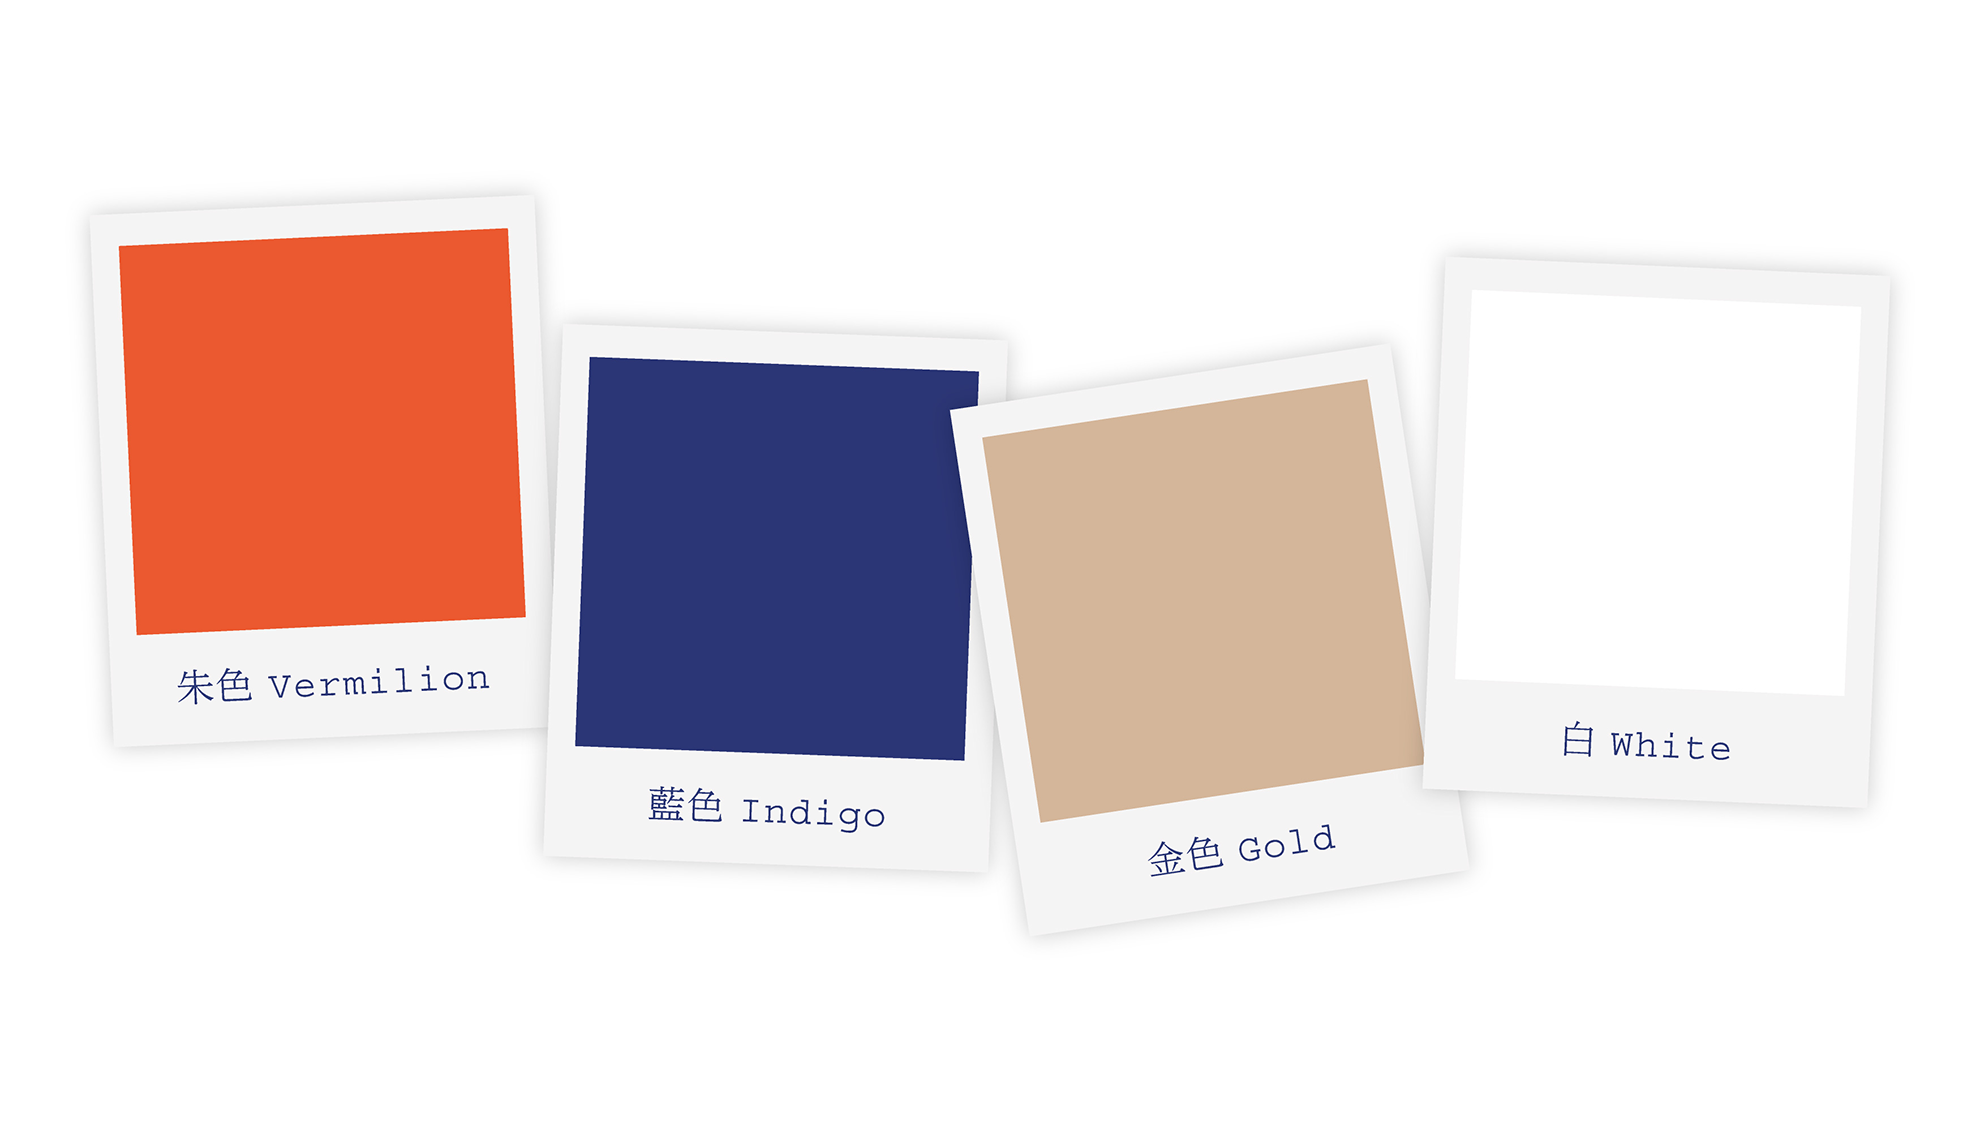 Identité visuelle inspirée Japon - palette de couleurs